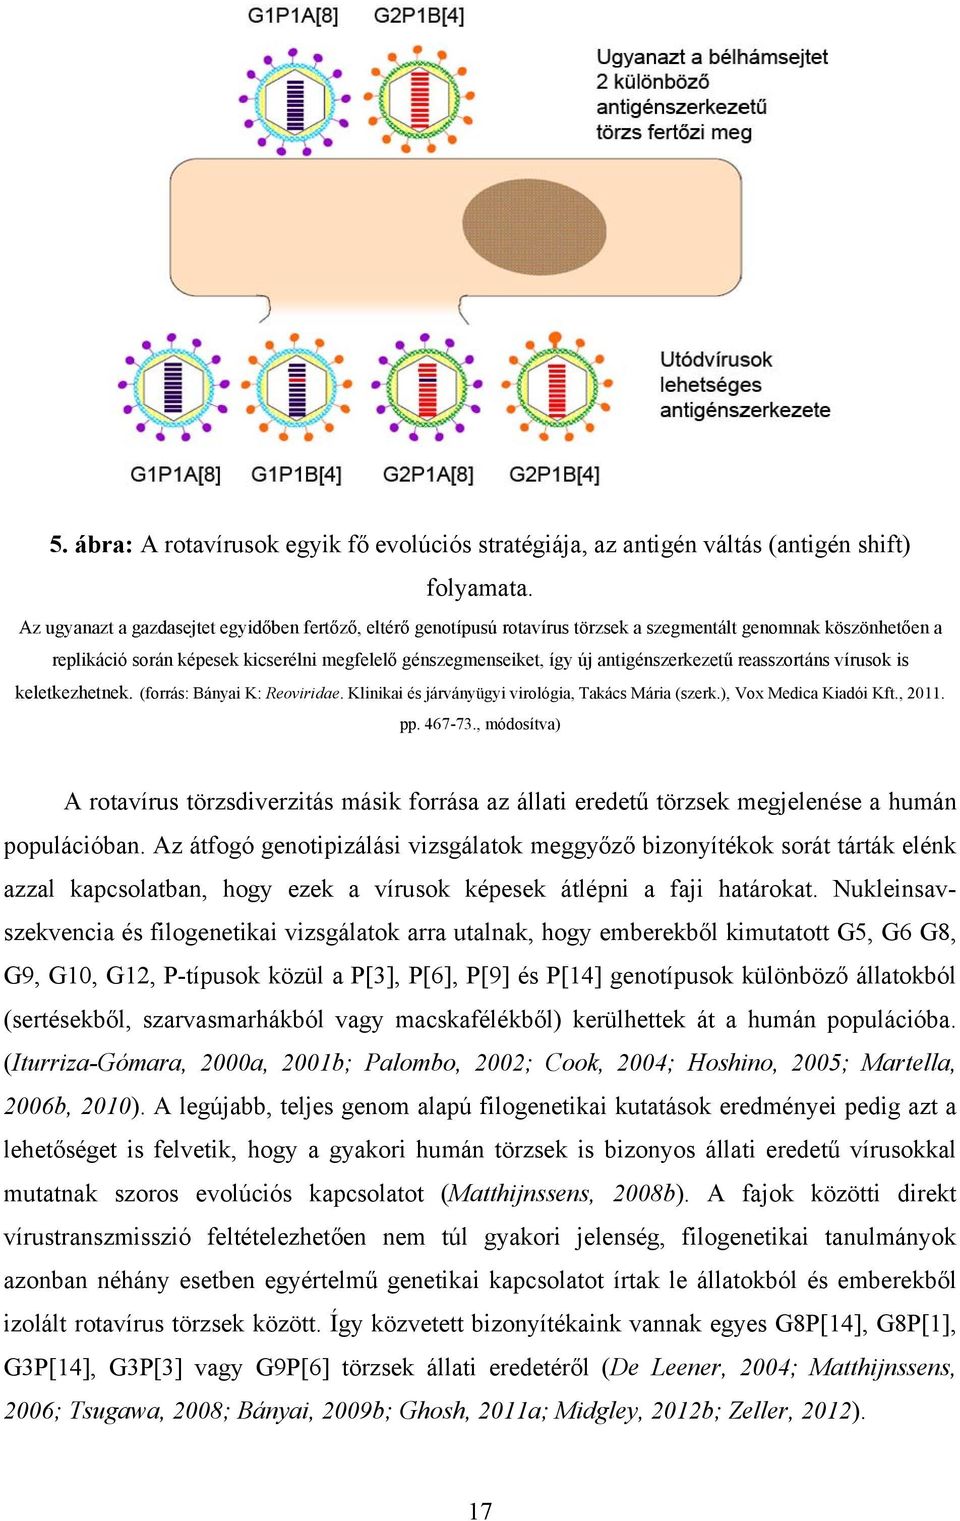 antigénszerkezetű reasszortáns vírusok is keletkezhetnek. (forrás: Bányai K: Reoviridae. Klinikai és járványügyi virológia, Takács Mária (szerk.), Vox Medica Kiadói Kft., 2011. pp. 467-73.